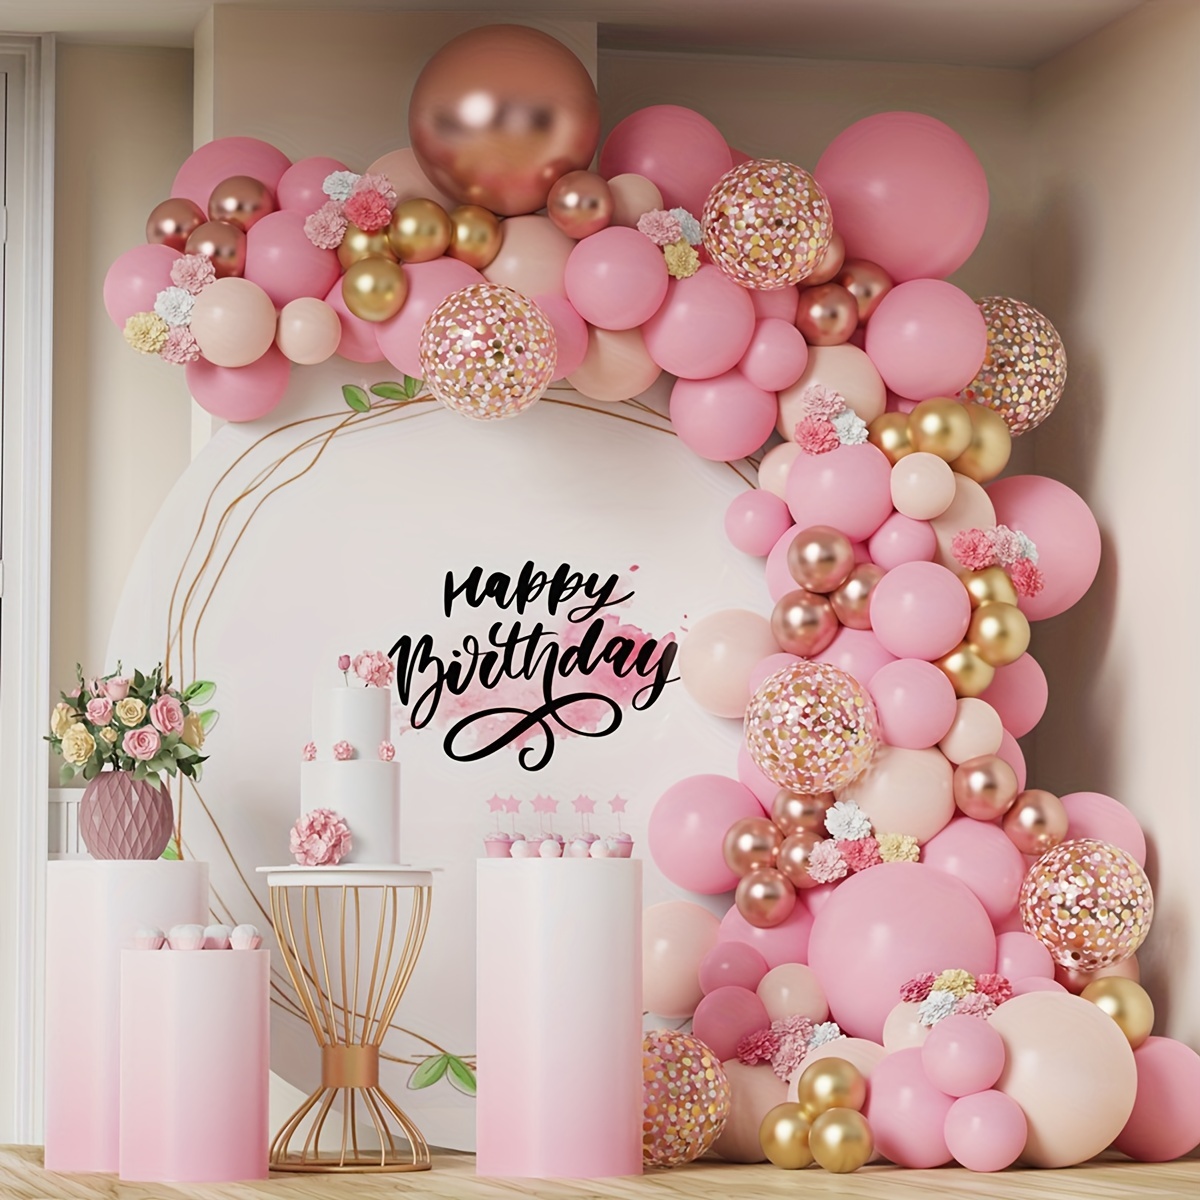 Globos rosas de 18 pulgadas, 12 globos de color rosa pastel, globos de  látex rosa mate para fiesta de baby shower, cumpleaños, San Valentín, boda